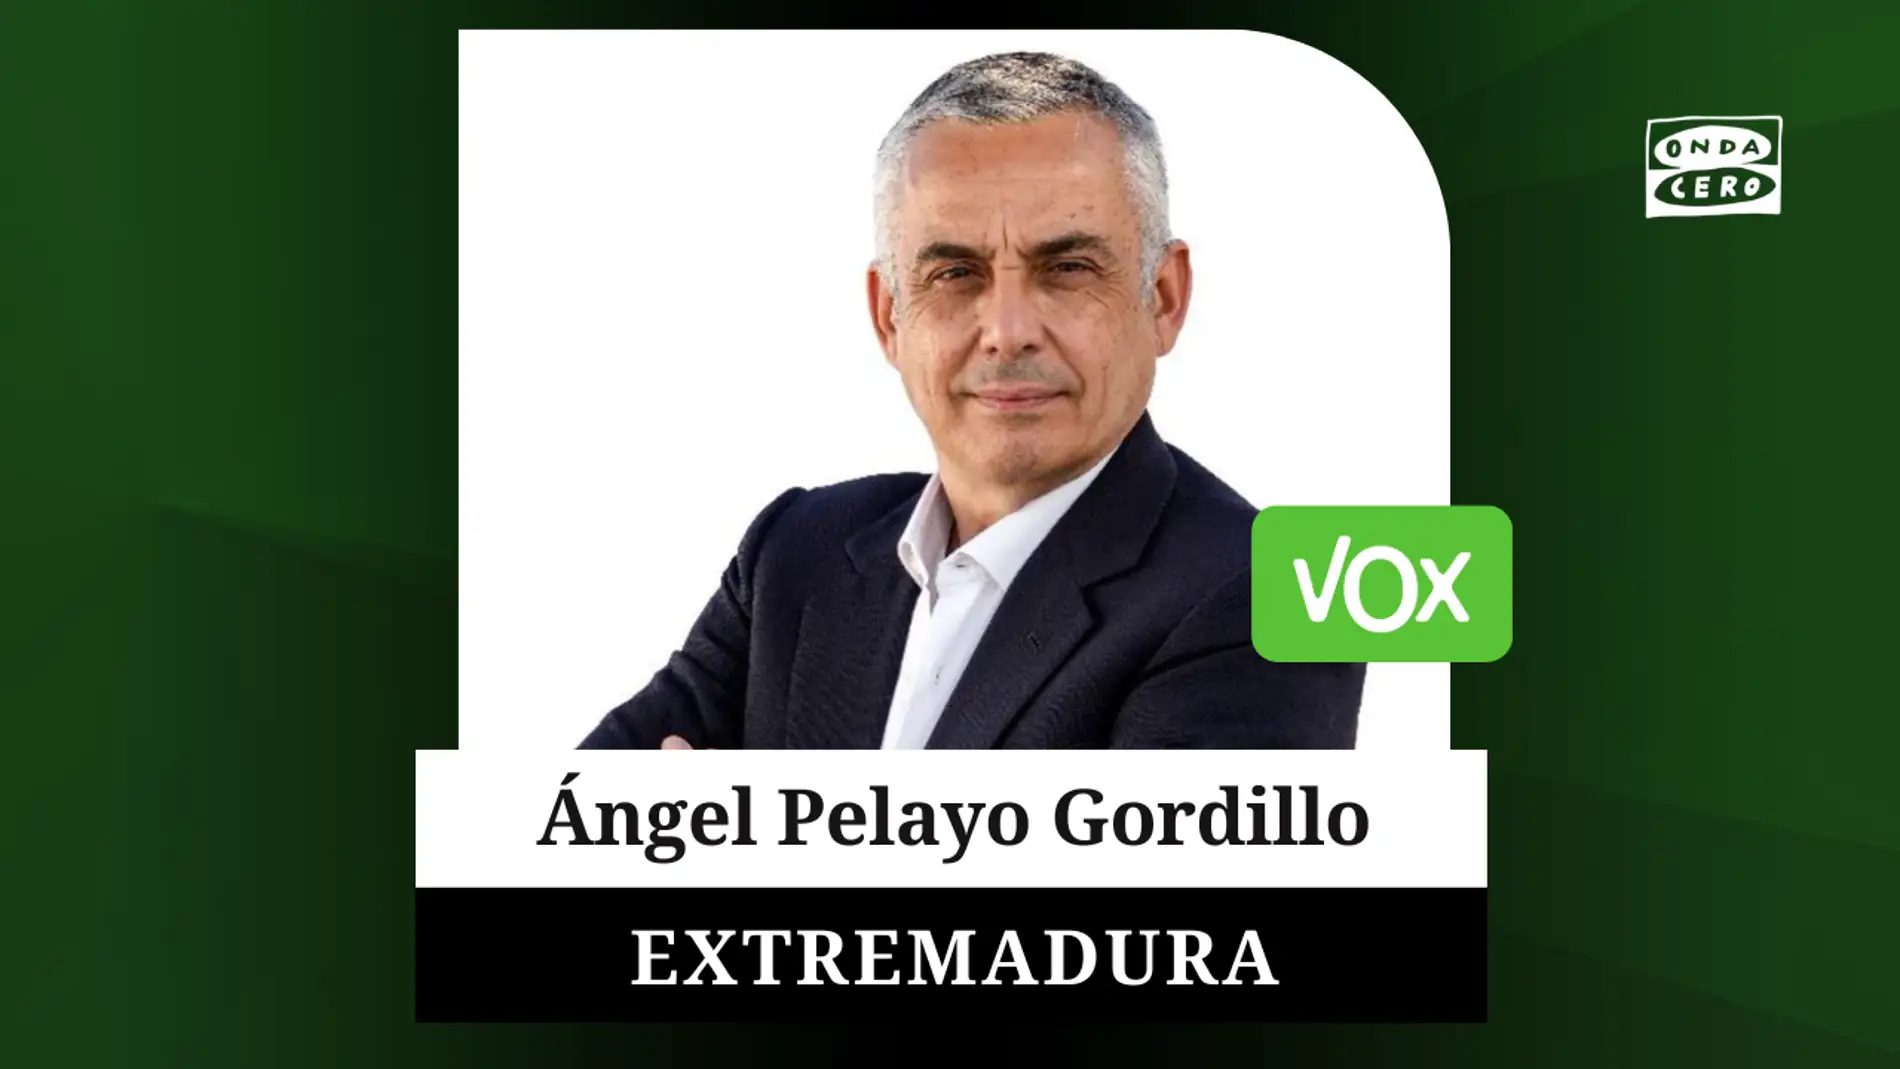 Ángel Pelayo Gordillo candidato de Vox a la presidencia de la Junta de Extremadura